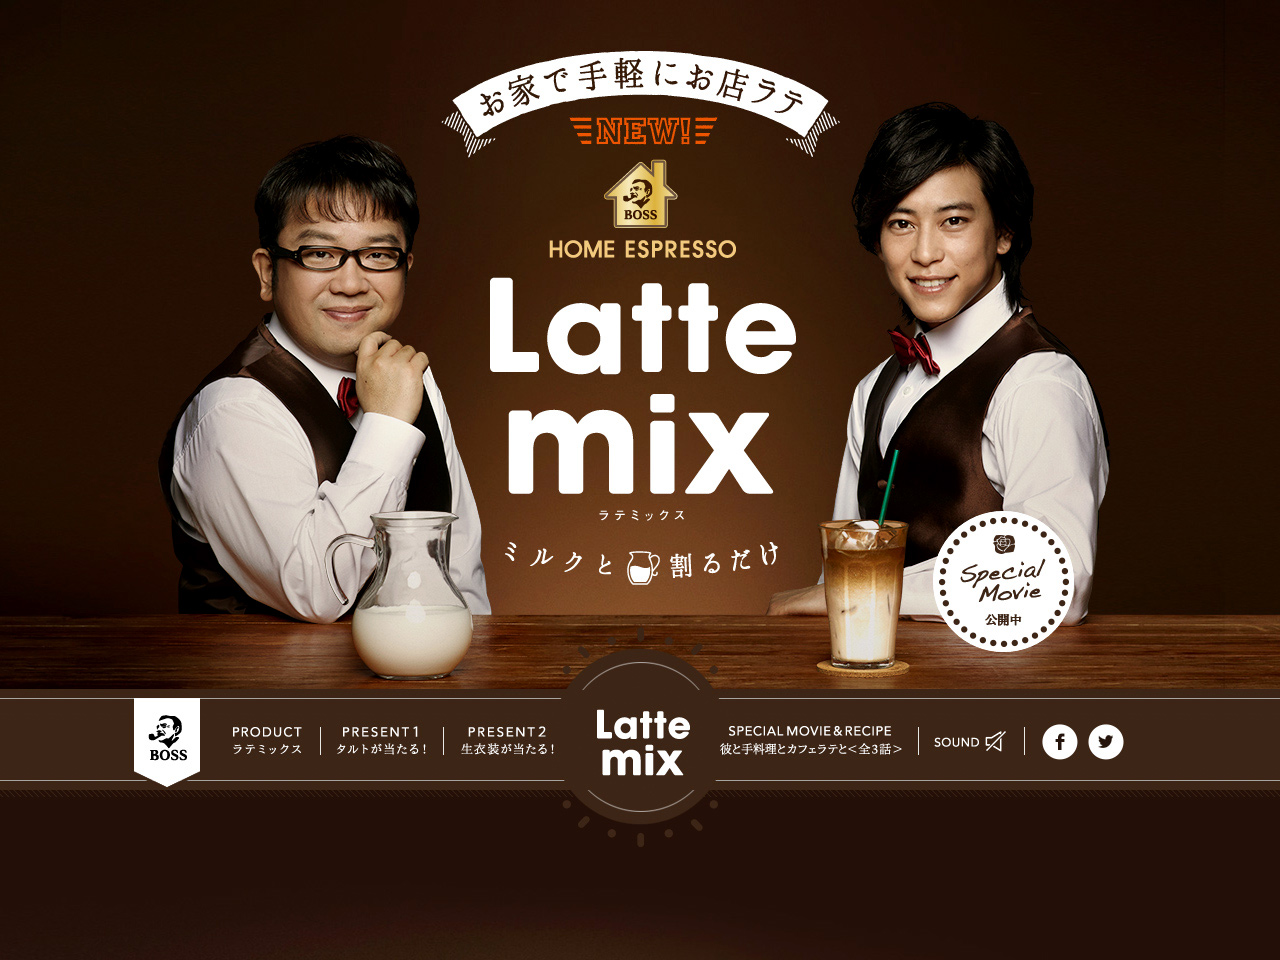 BOSS Latte mix